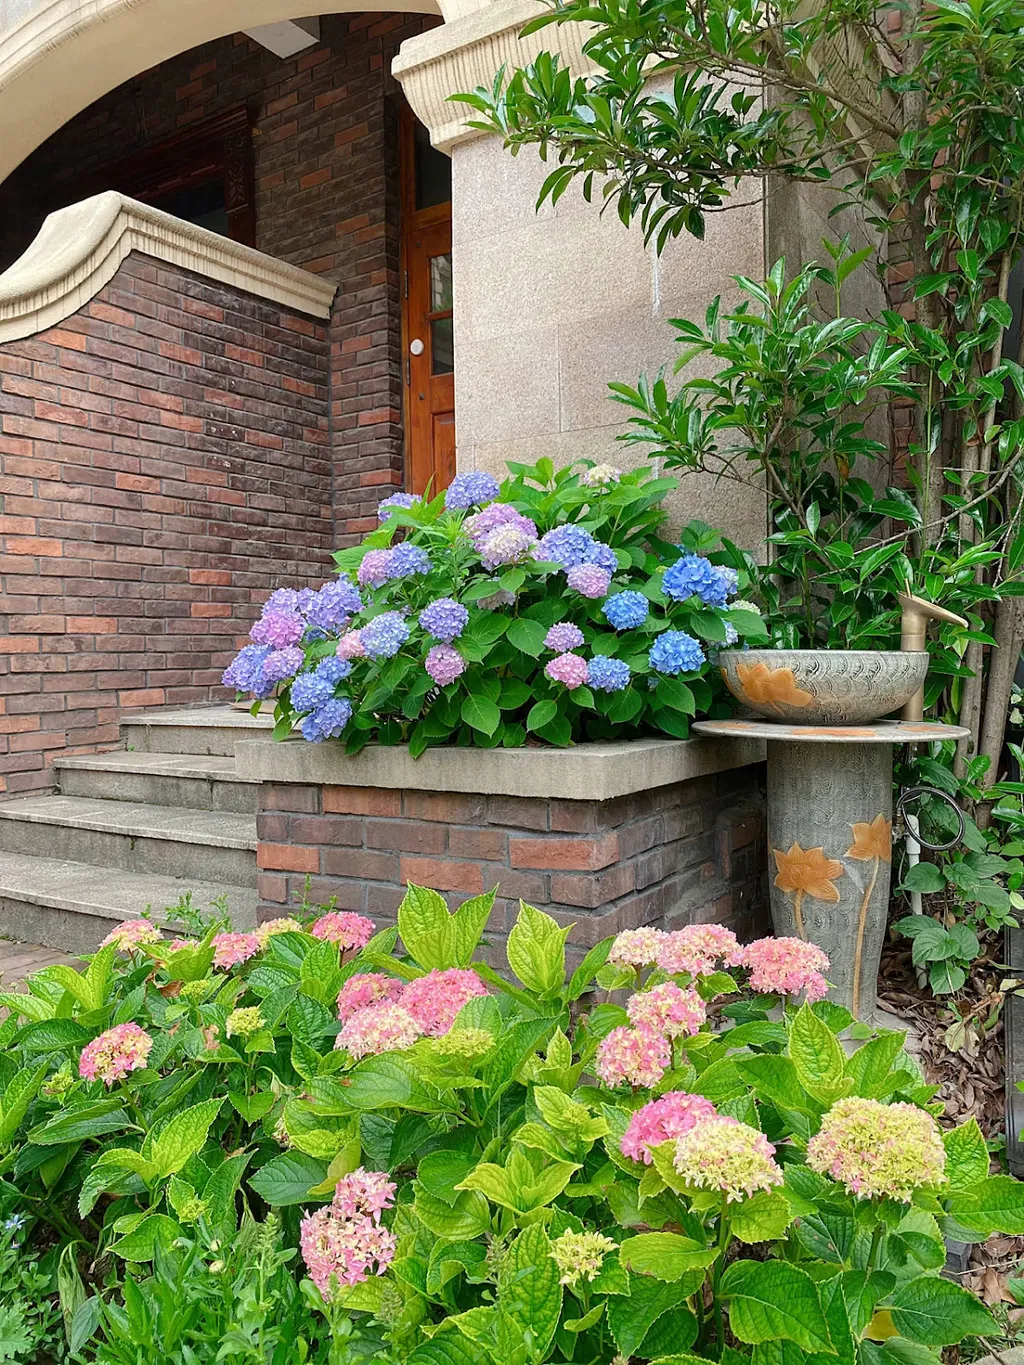 Đặt các chậu hoa cẩm tú cầu trên các bậc cầu thang trong vườn nhà để tạo điểm nhấn và làm cho bậc cầu thang trở nên rực rỡ và thu hút.